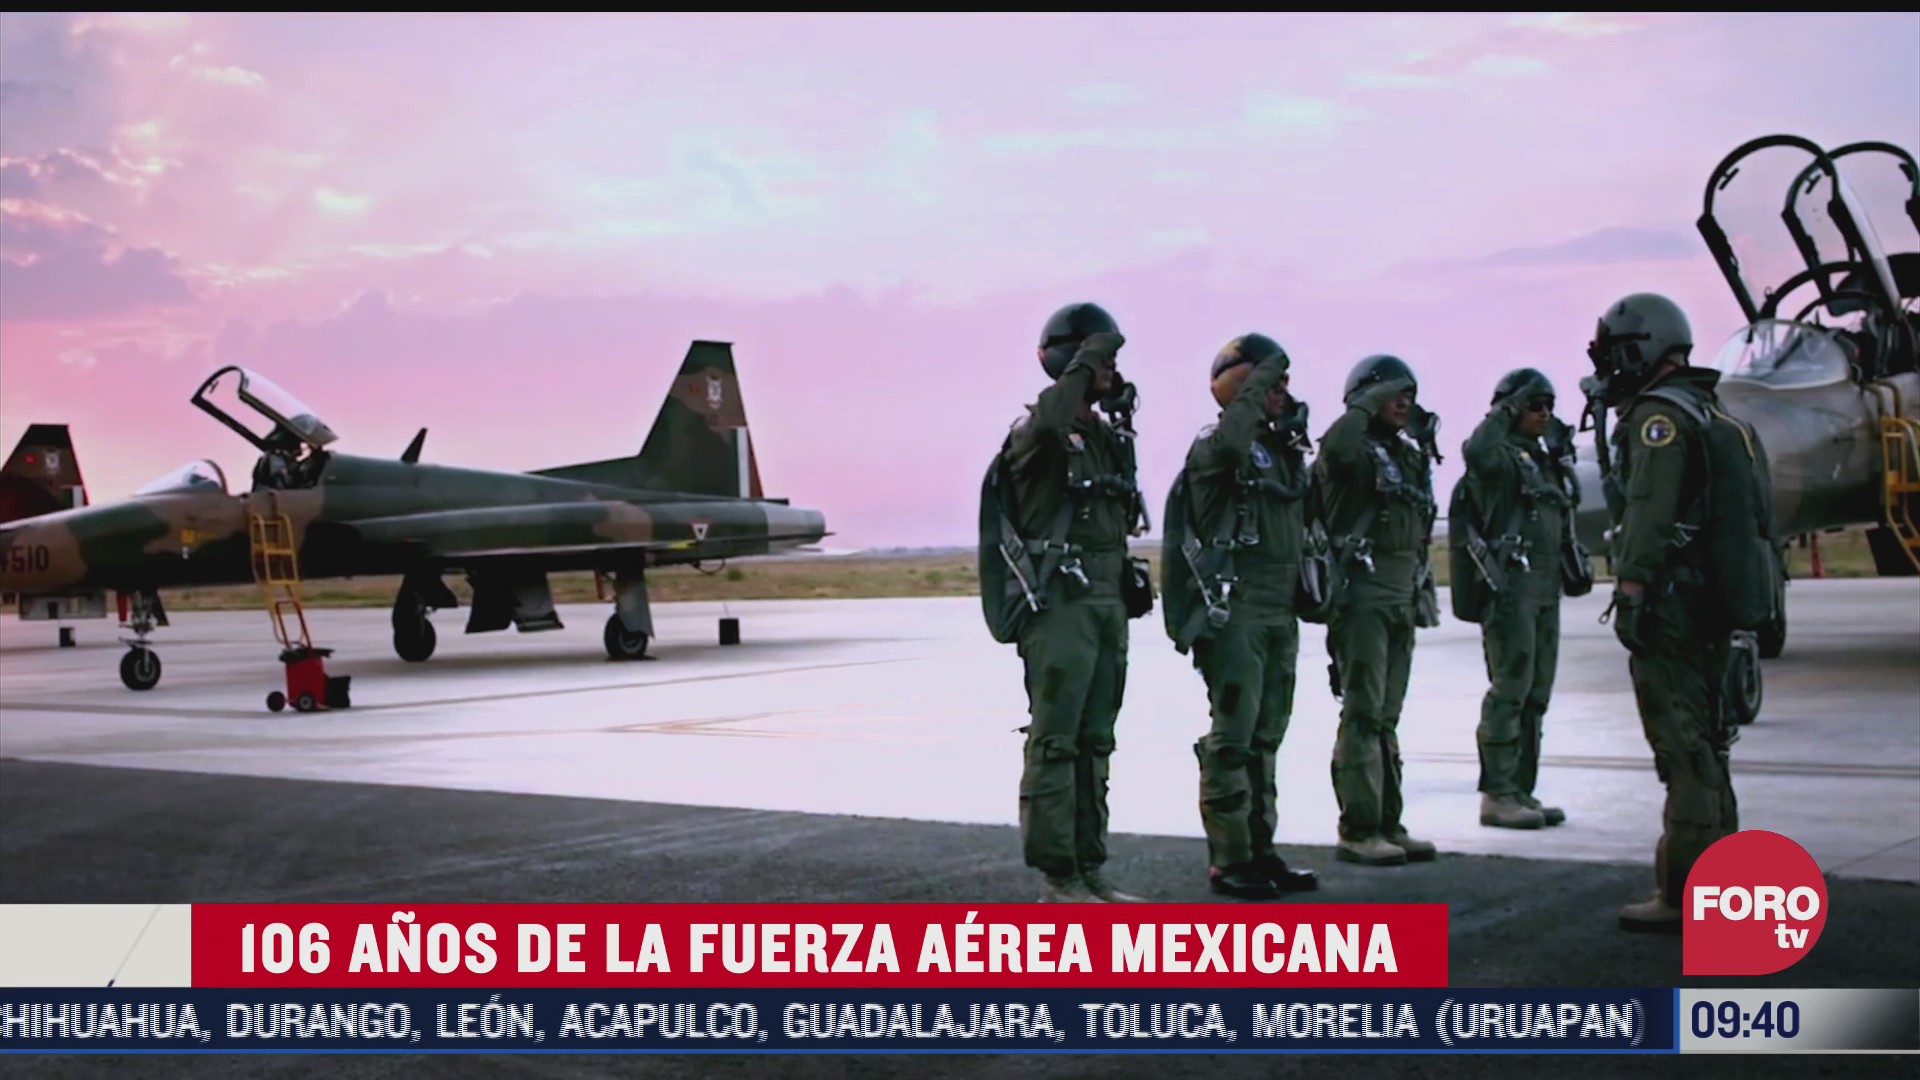 la historia de los 106 anos de la fuerza aerea mexicana